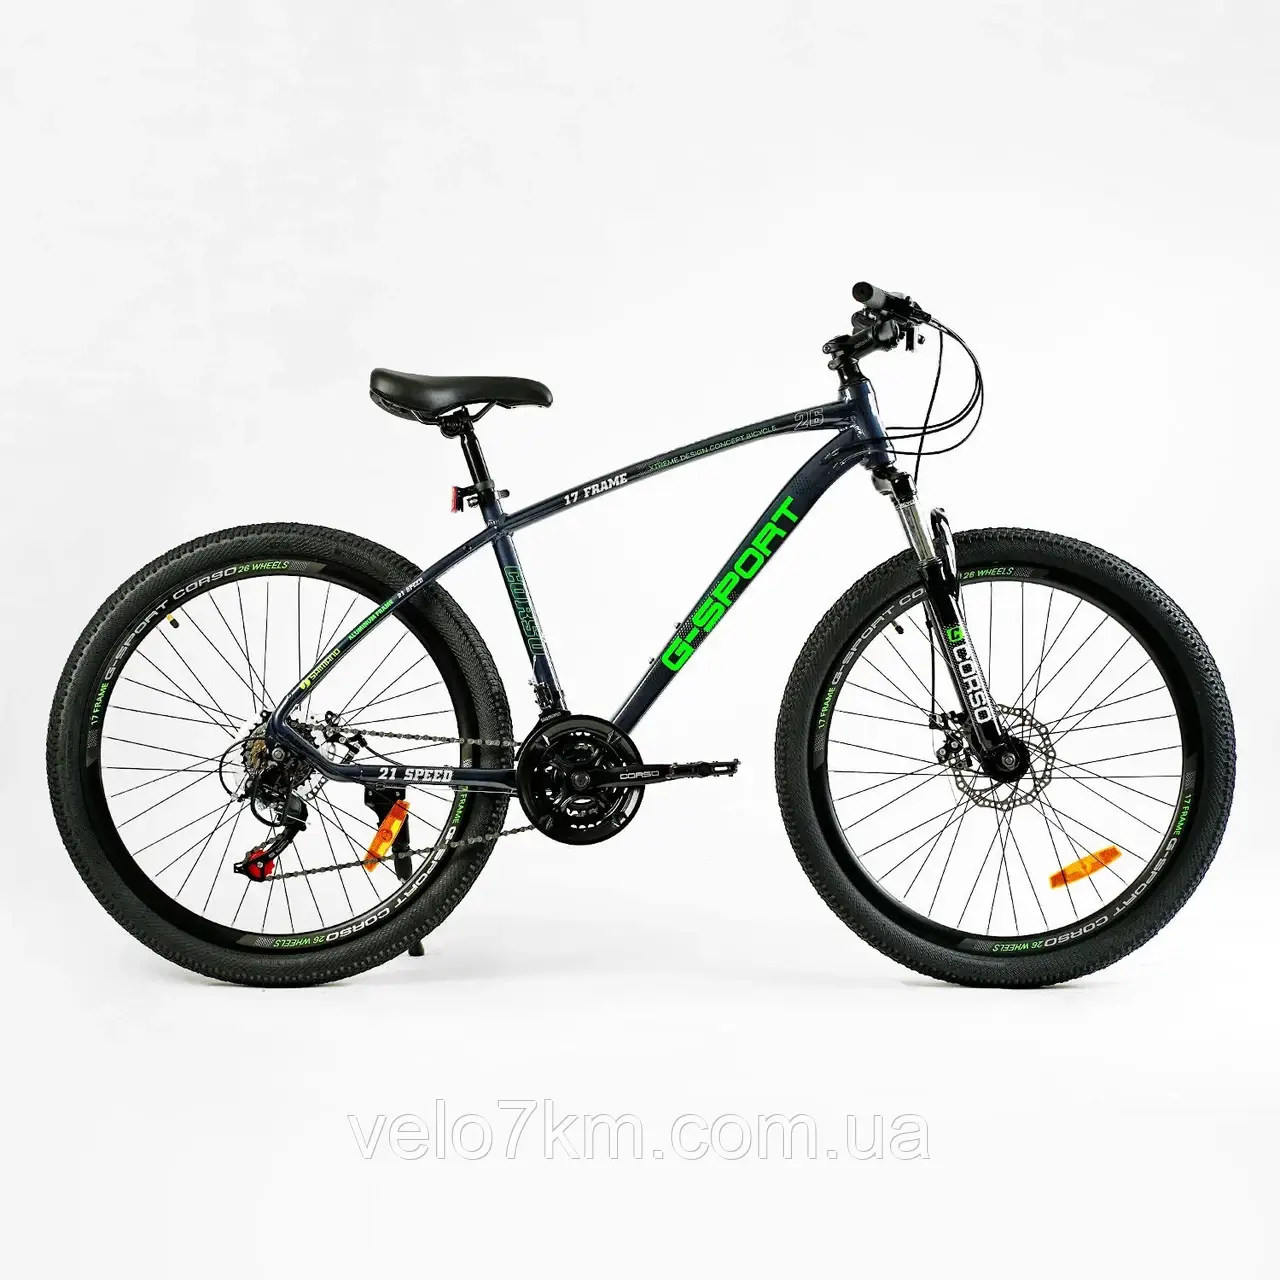 Гірський швидкісний велосипед Corso G-Sport 26" алюмінієва рама 17", Shimano 21S, зібраний в коробці на 75%